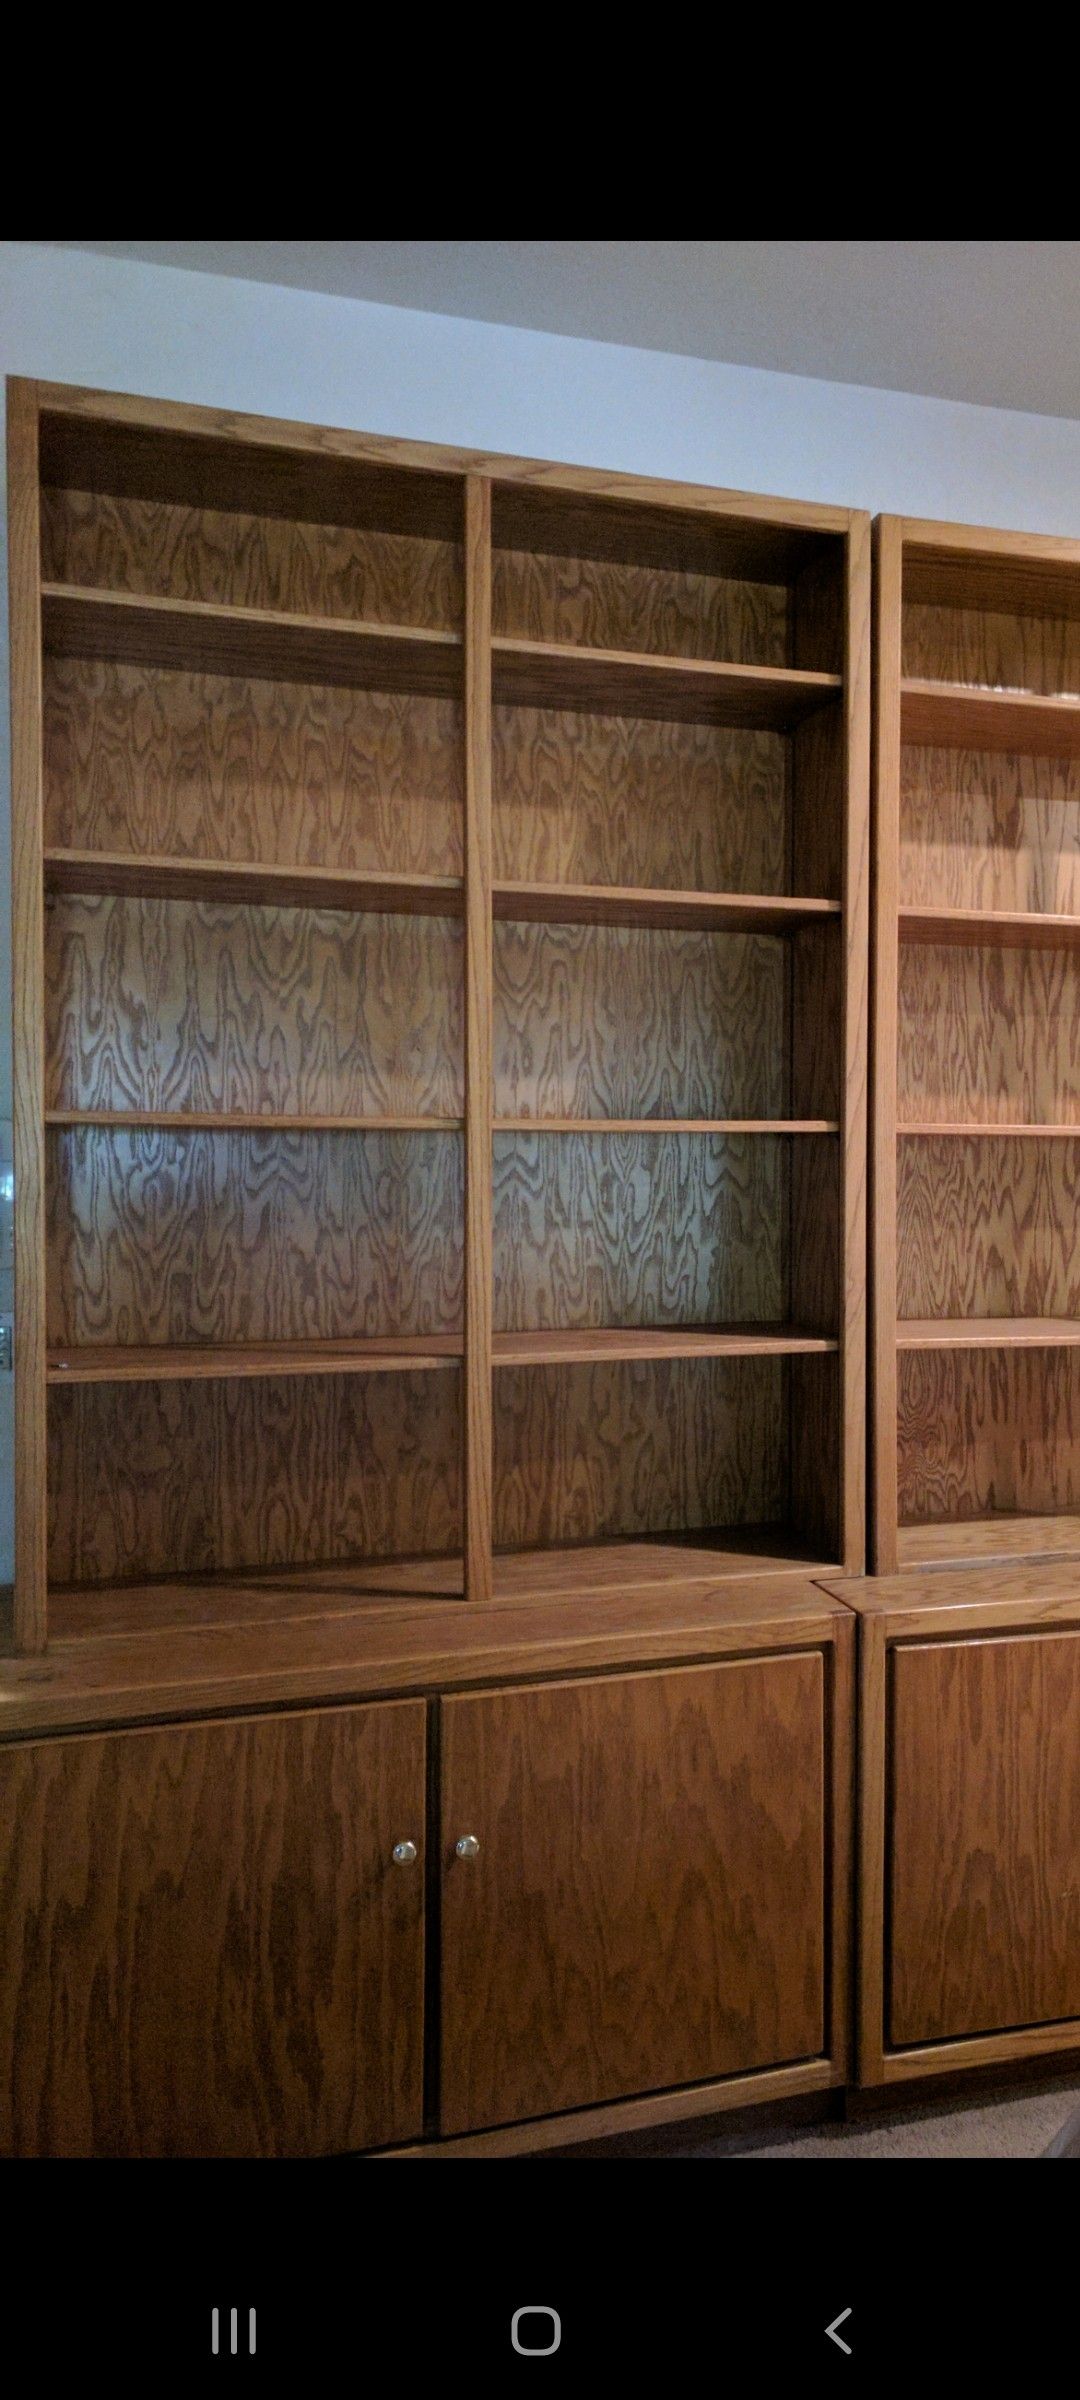 Wood bookshelves